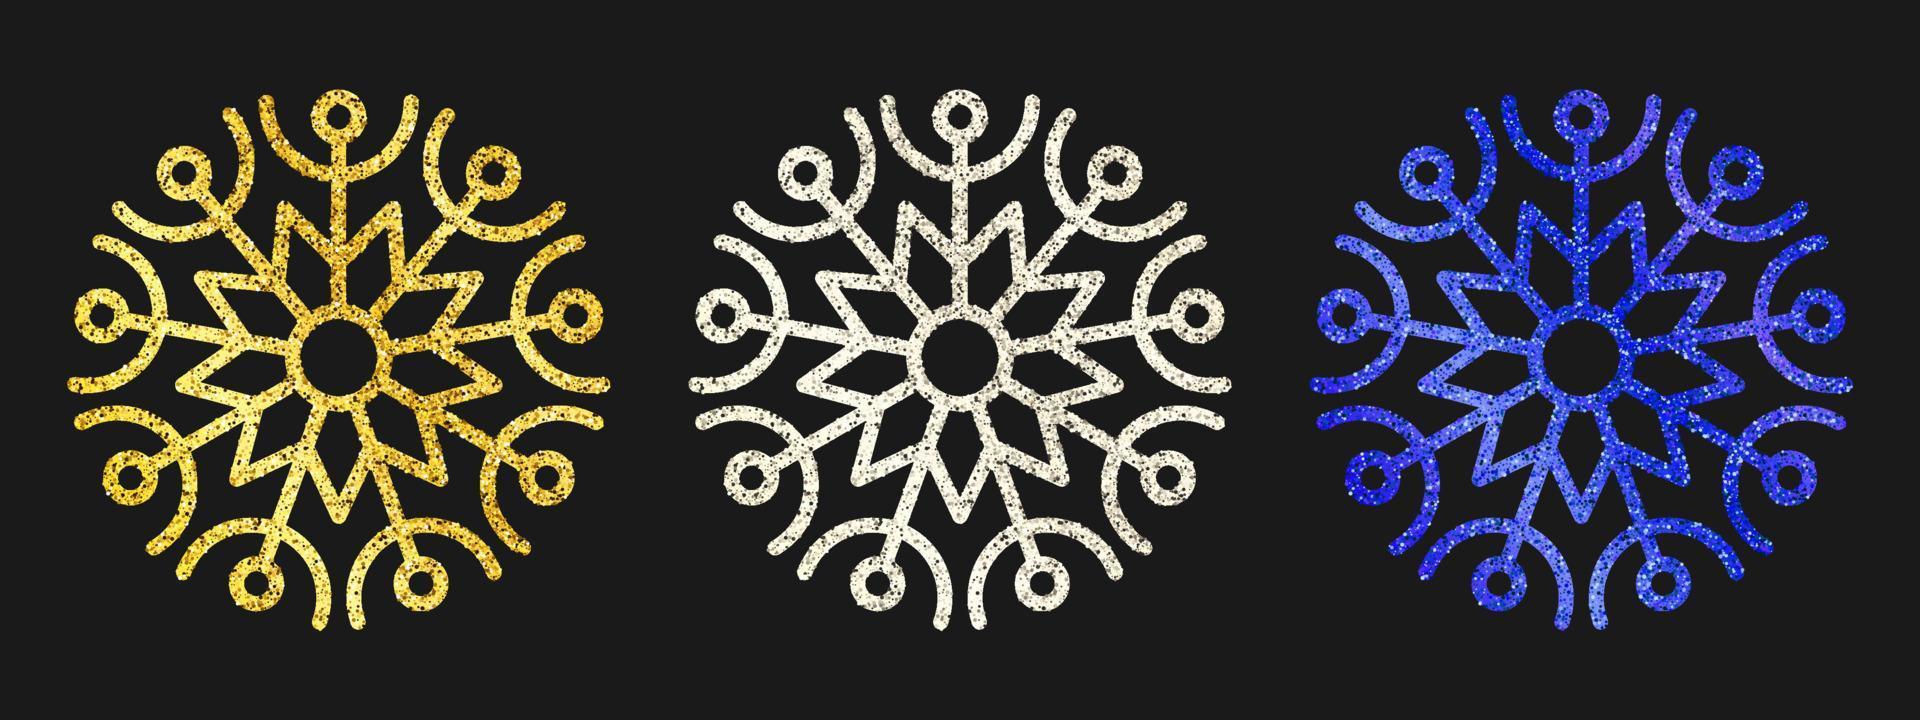 copos de nieve brillantes sobre fondo oscuro. juego de tres copos de nieve con purpurina dorada, plateada y azul. elementos de decoración de navidad y año nuevo. ilustración vectorial vector